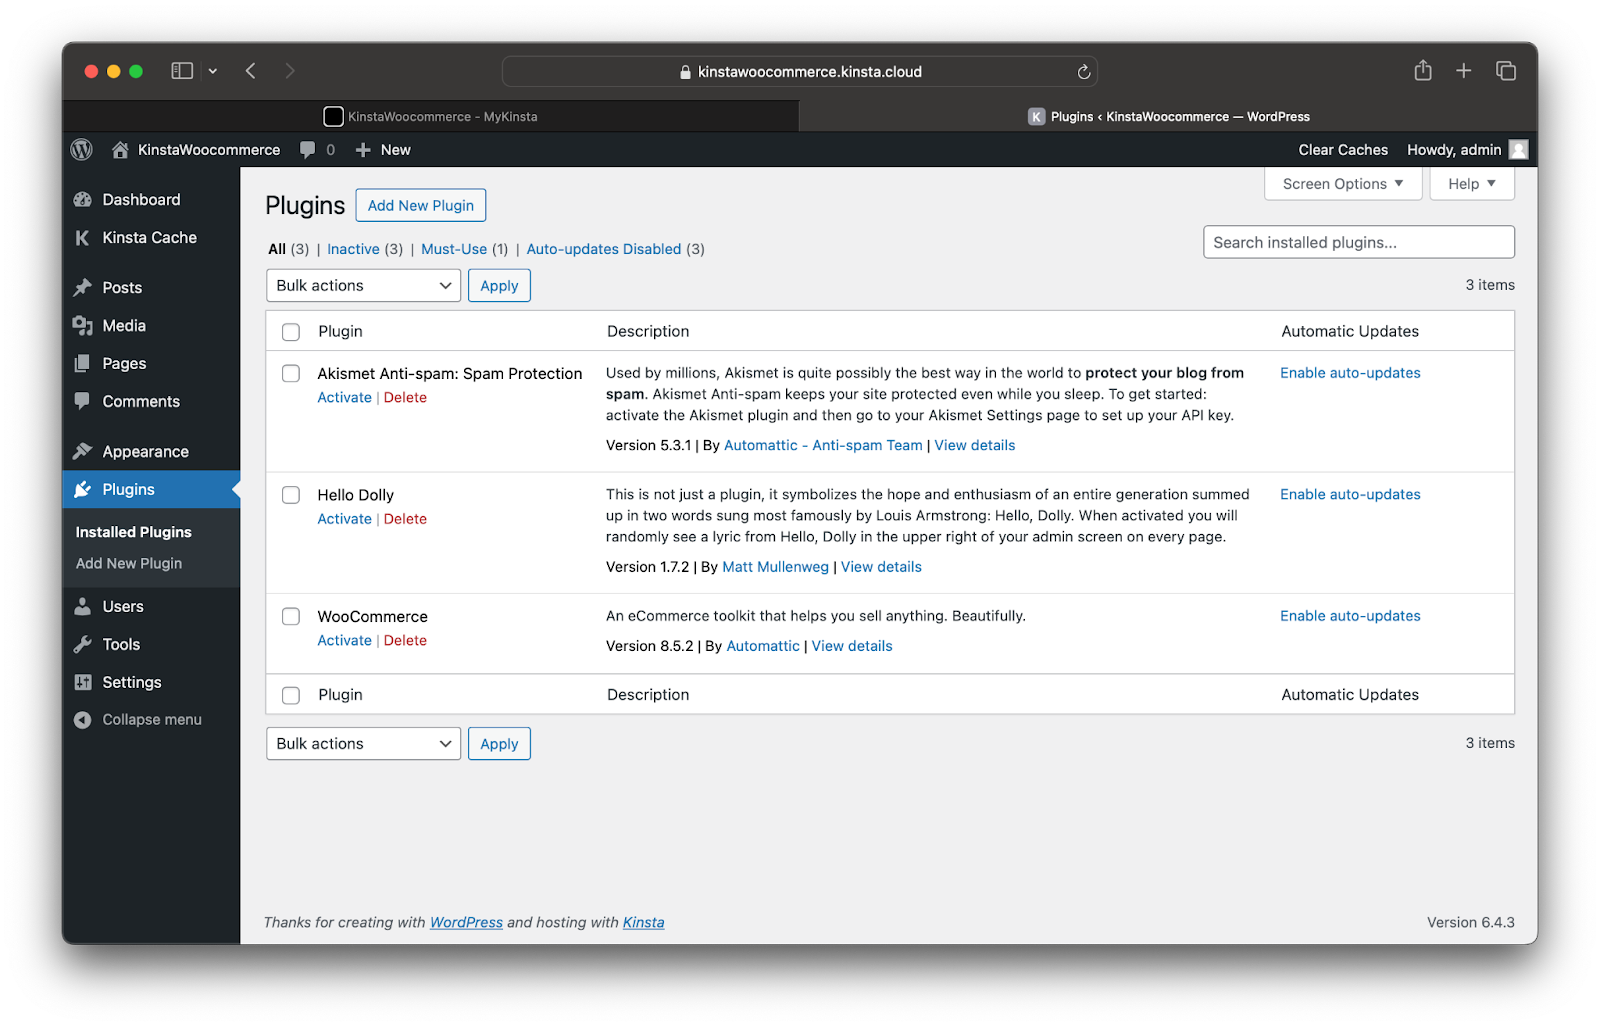 La dashboard di amministrazione di WordPress mostra i plugin opzionali disponibili, compreso il plugin WooCommerce. Ogni plugin ha un pulsante di attivazione e di eliminazione sotto l'opzione